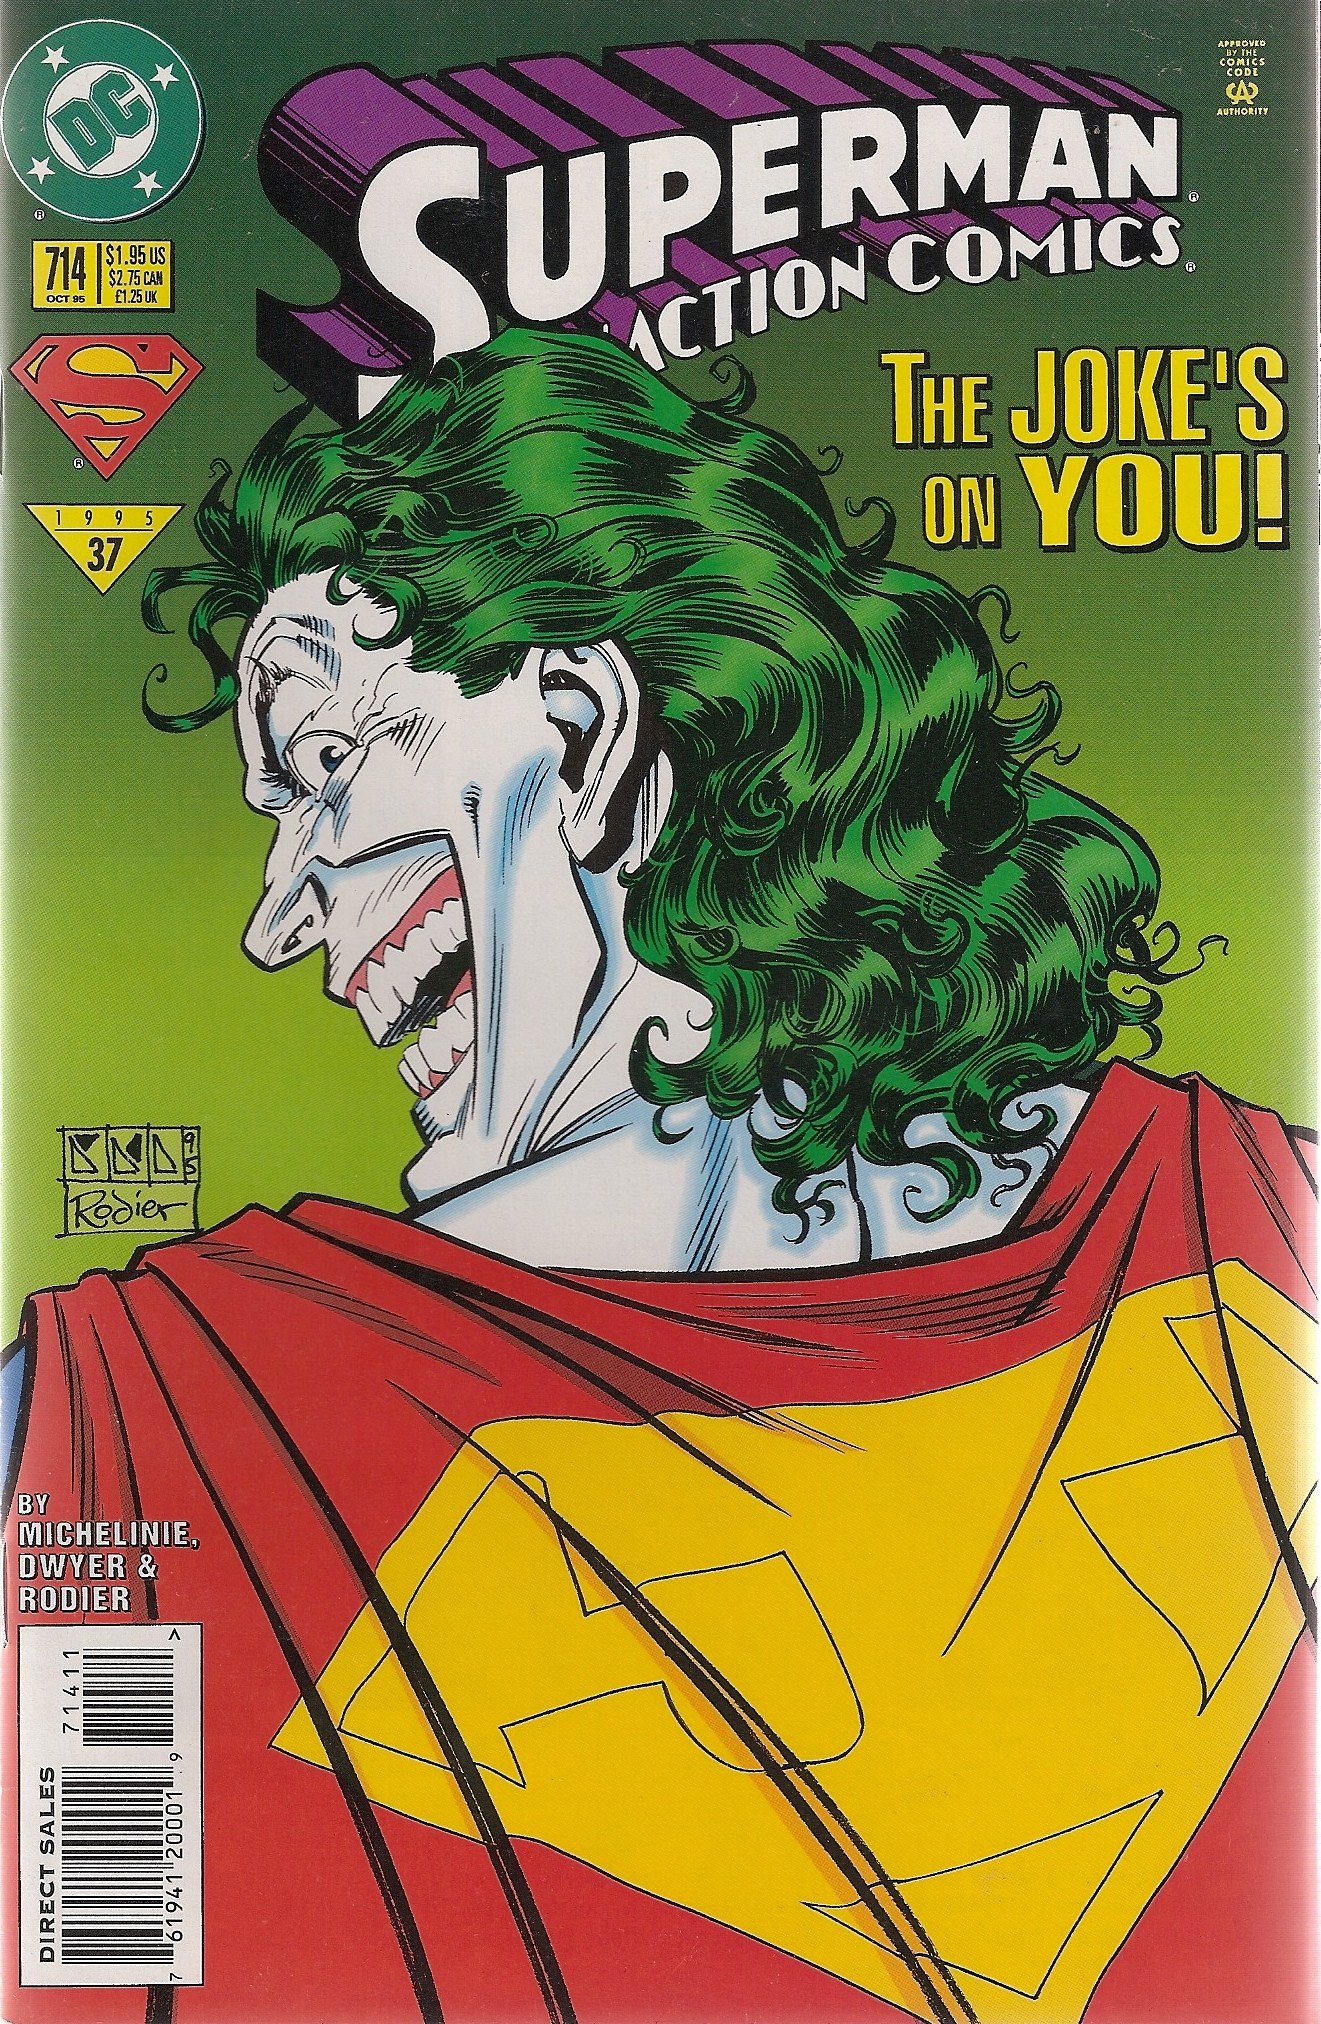 Action Comics Vol. 1 #714